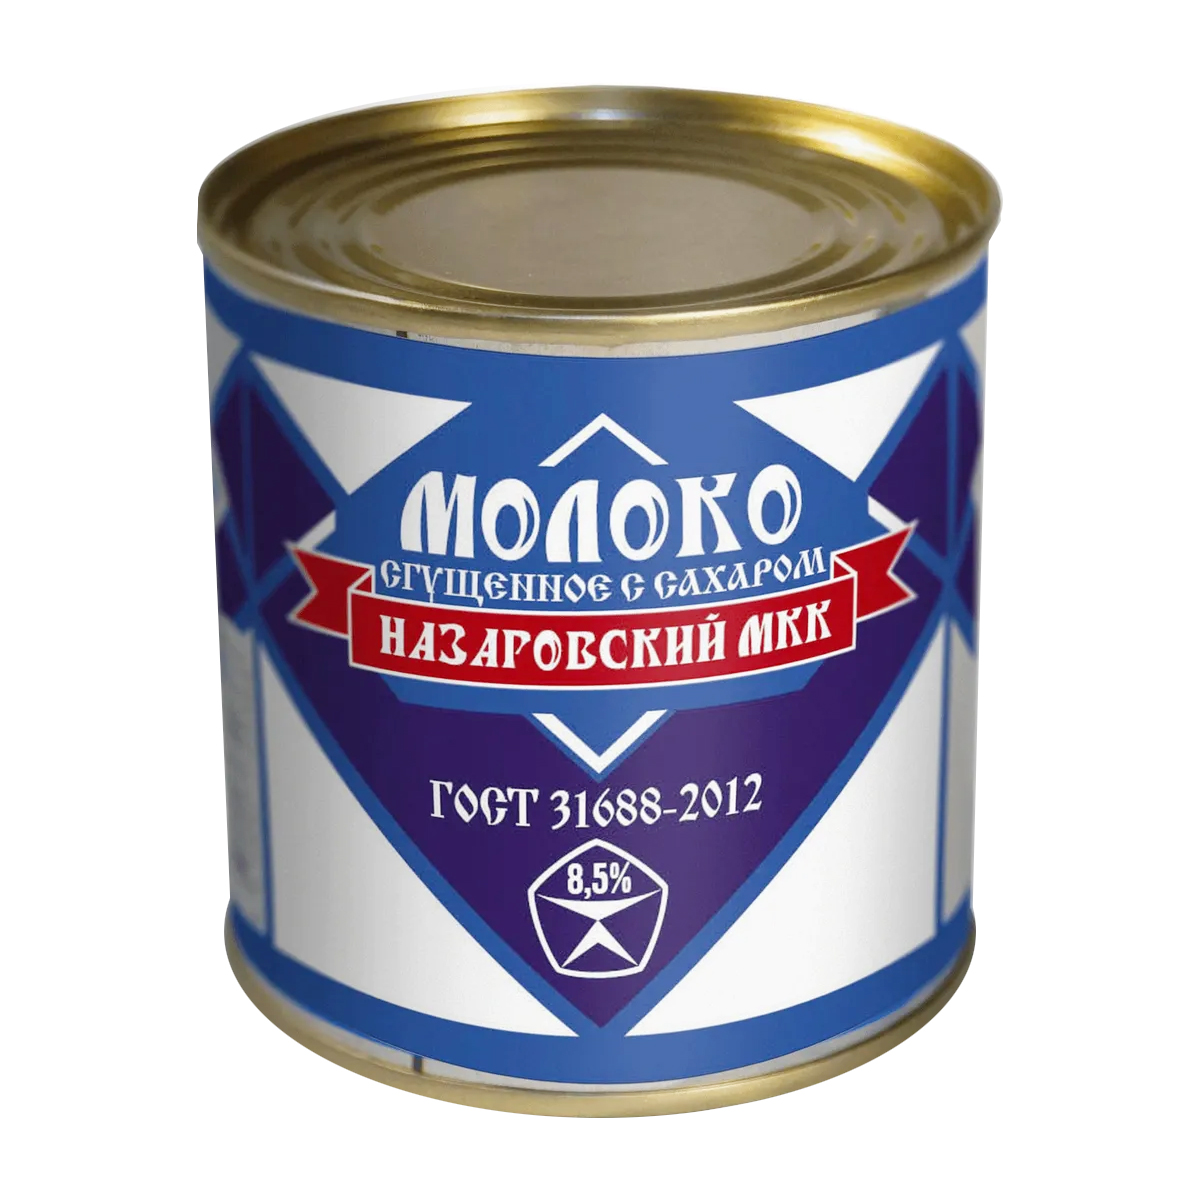 Молоко сгущенное с сахаром цельное 8,5% "Назаровский МКК" ГОСТ 31688 2012 270г